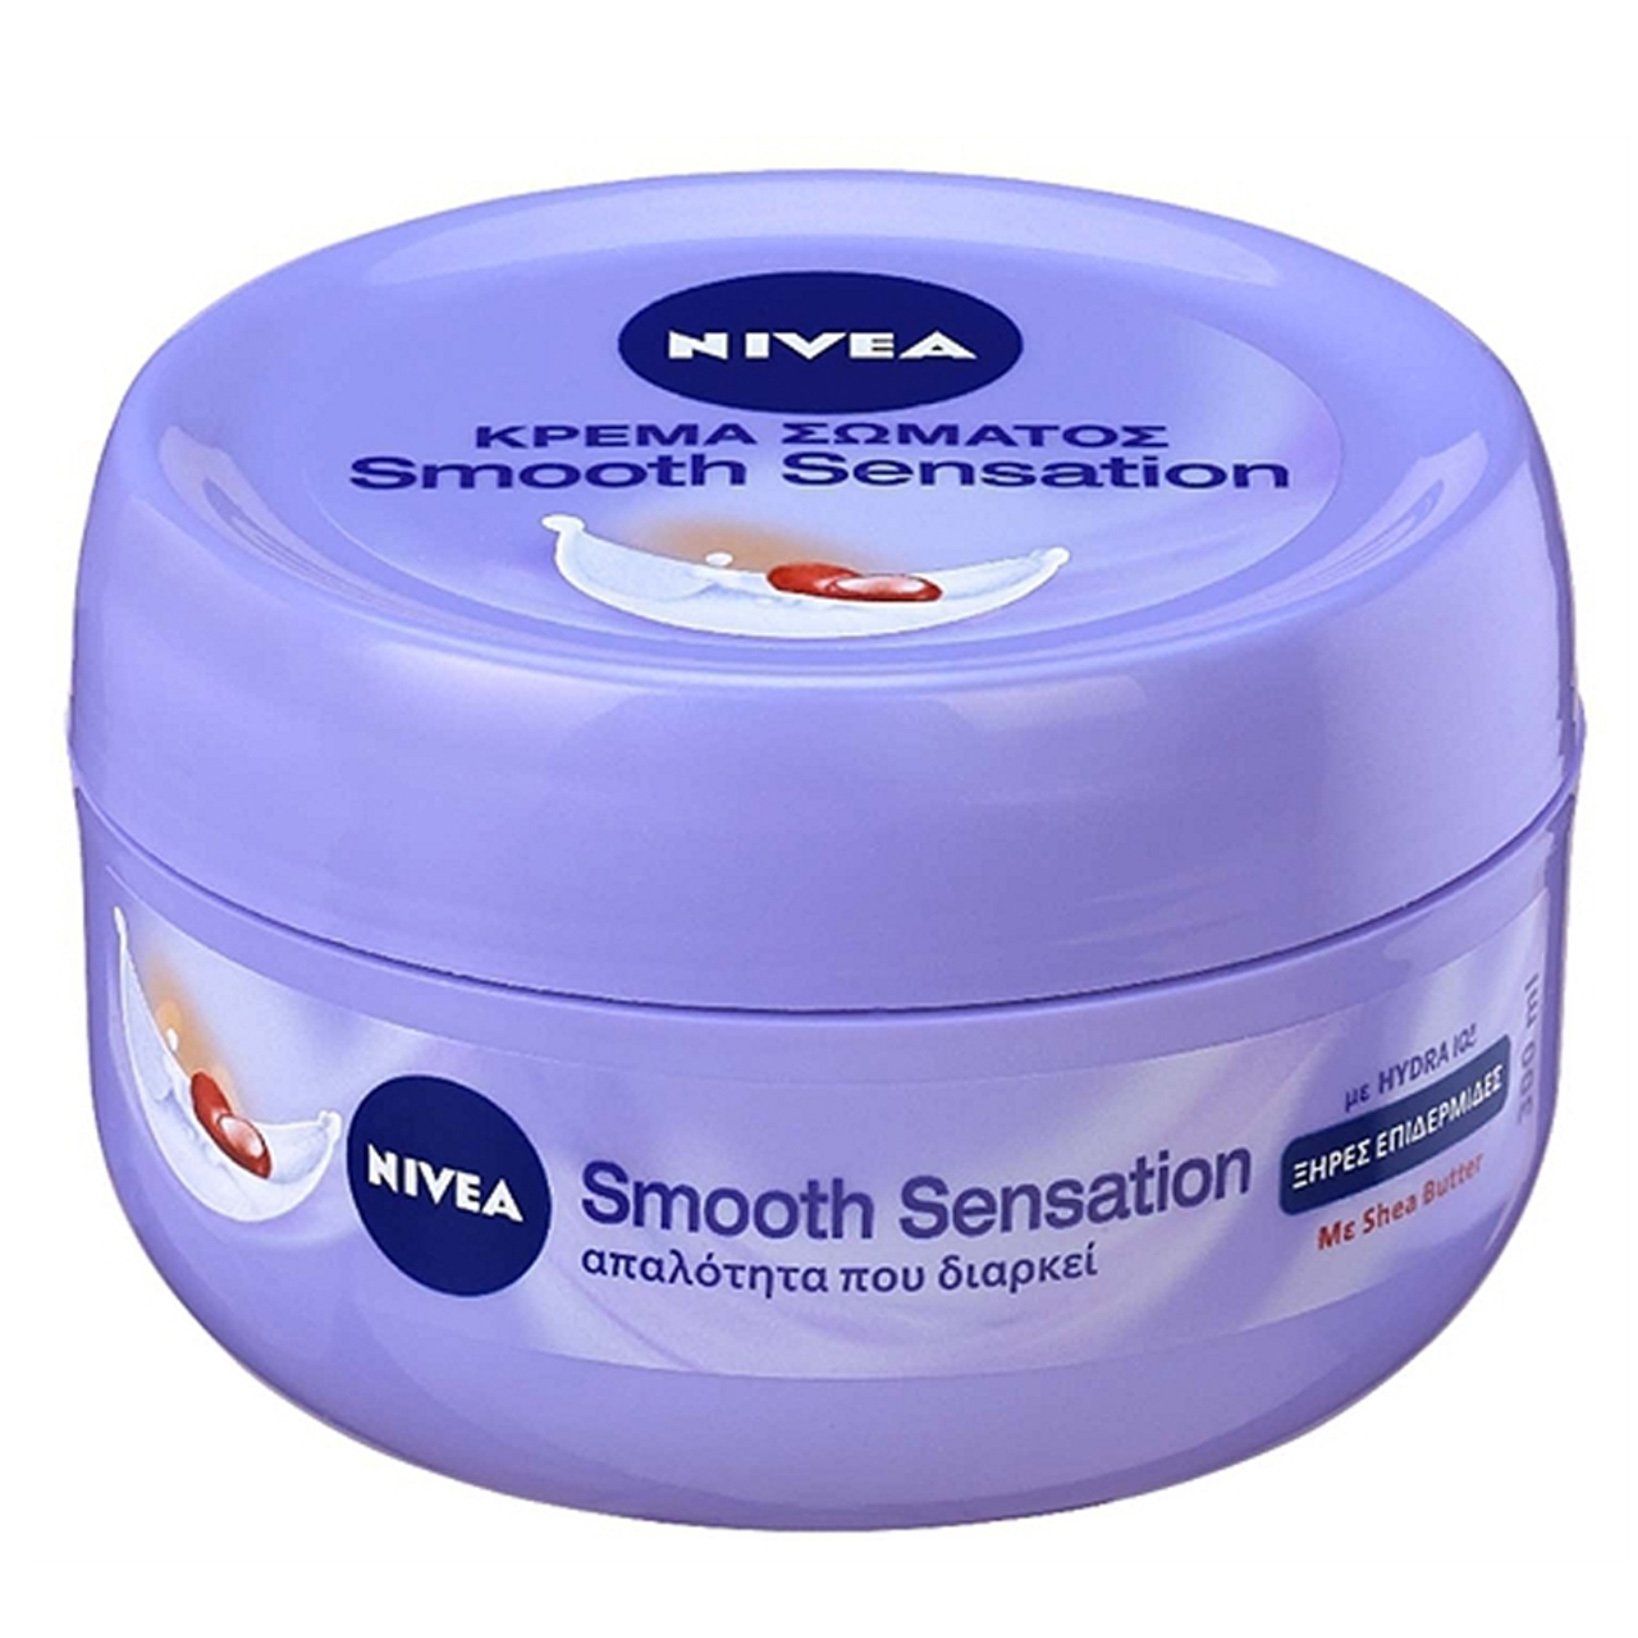 Nivea Smooth Sensation Body Cream Κρέμα Σώματος για Απαλότητα & Βαθιά Ενυδάτωση 300ml